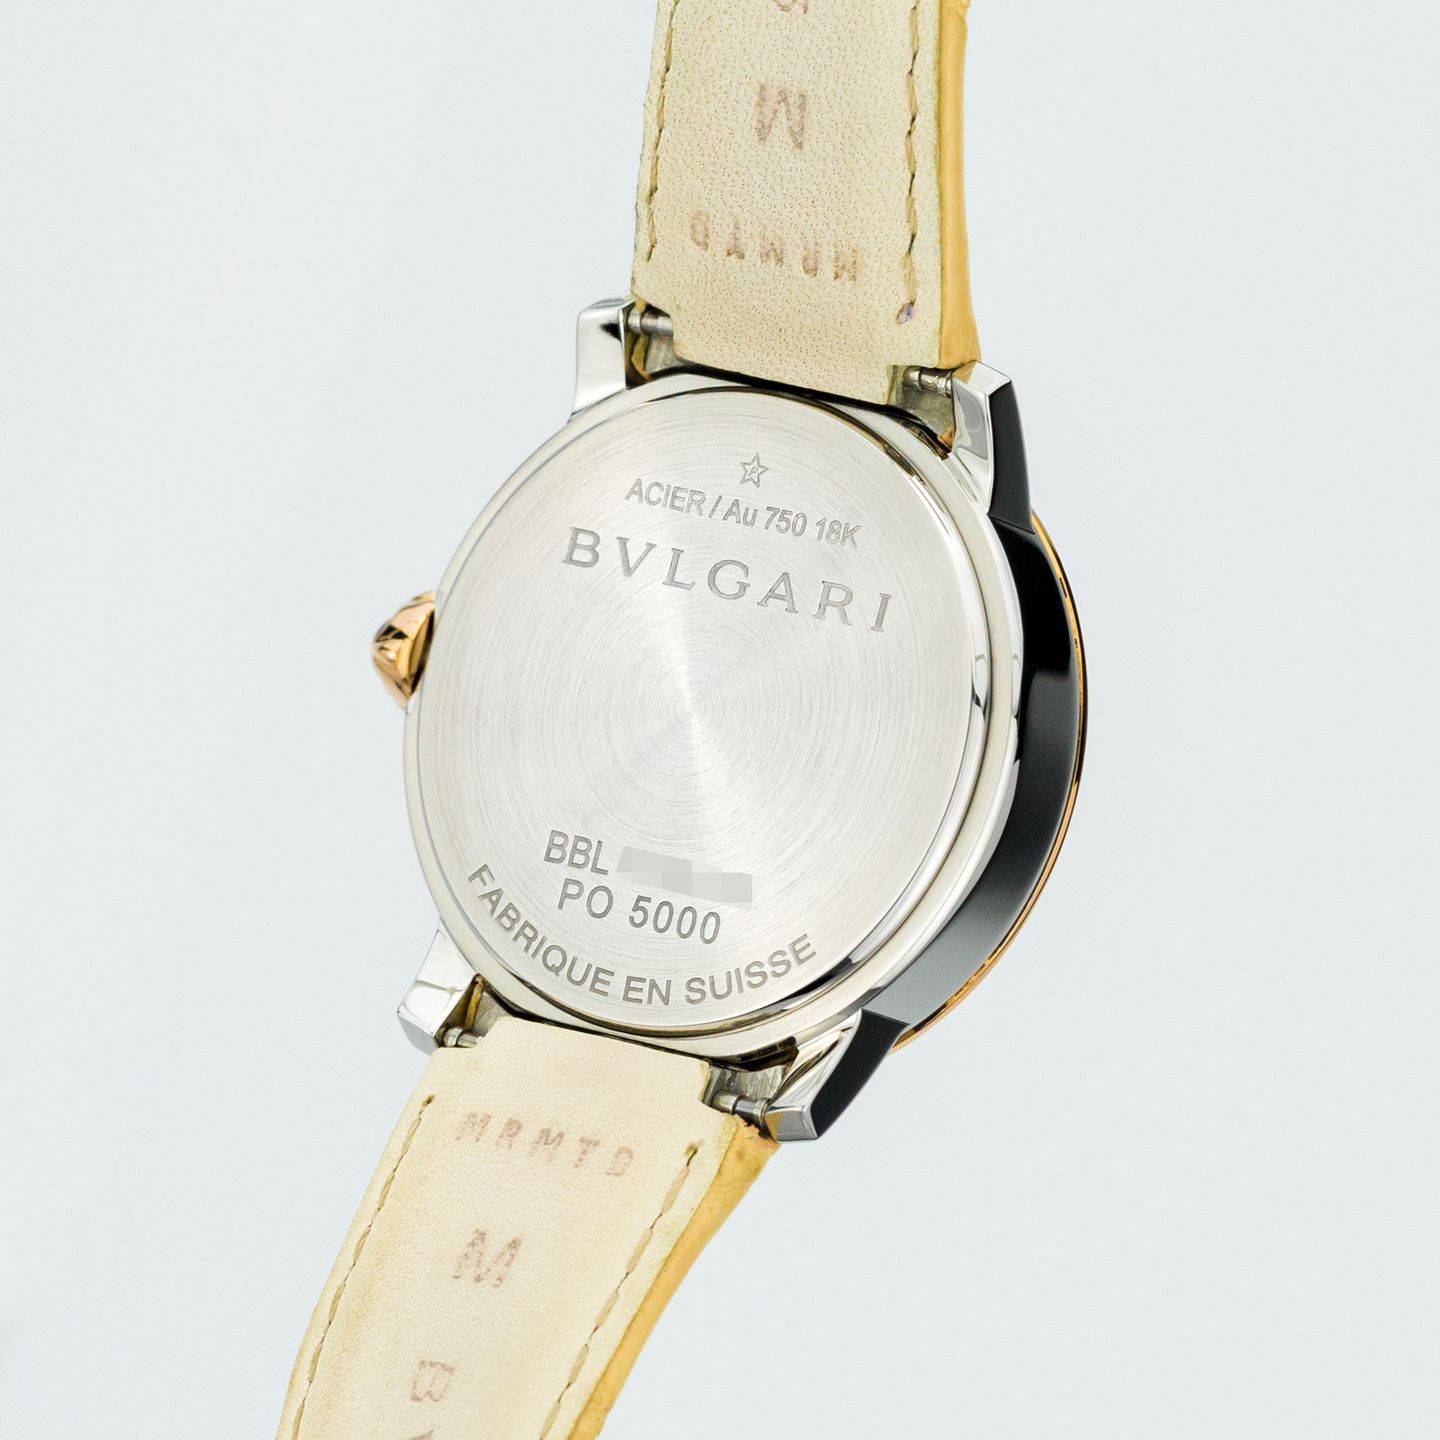 Bulgari Bulgari 101893 (Unknown (random serial)) - Pearl dial 33 mm Gold/Steel case (7/7)